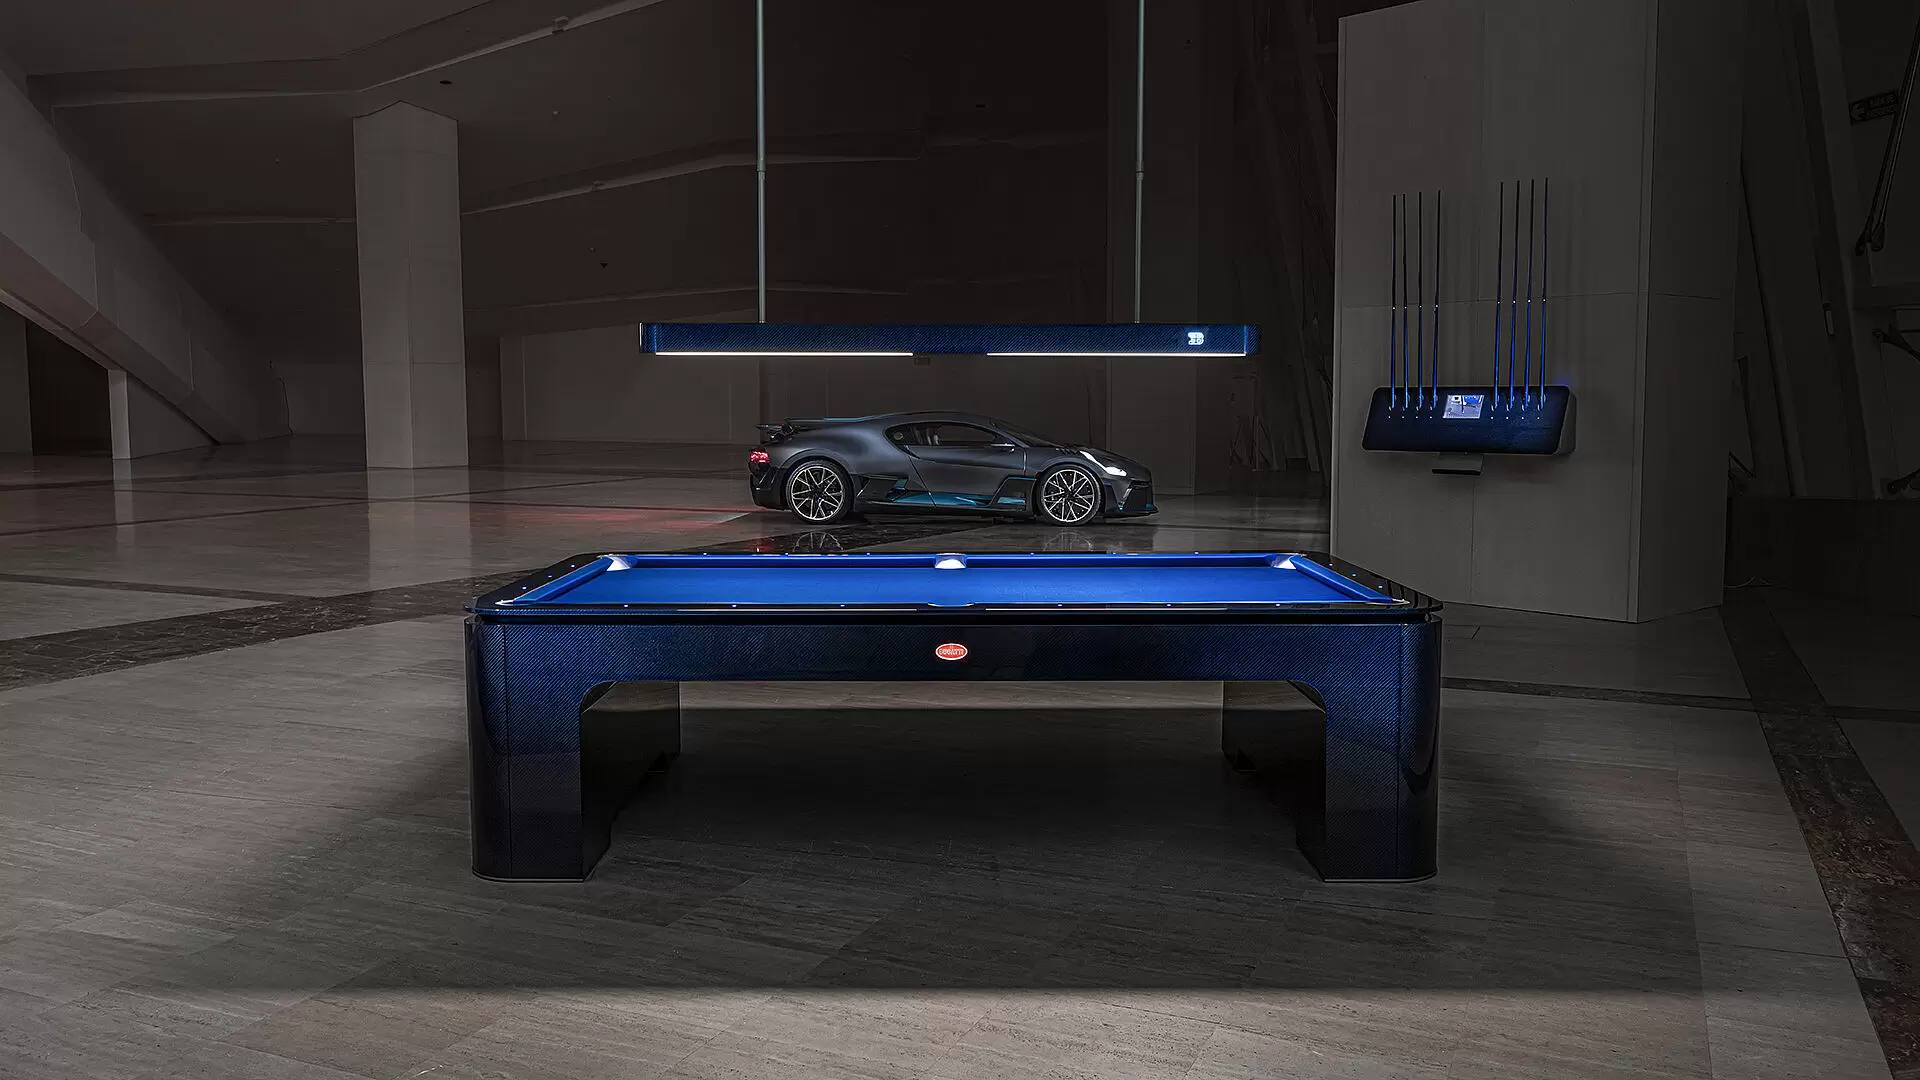 Bugatti's pool table